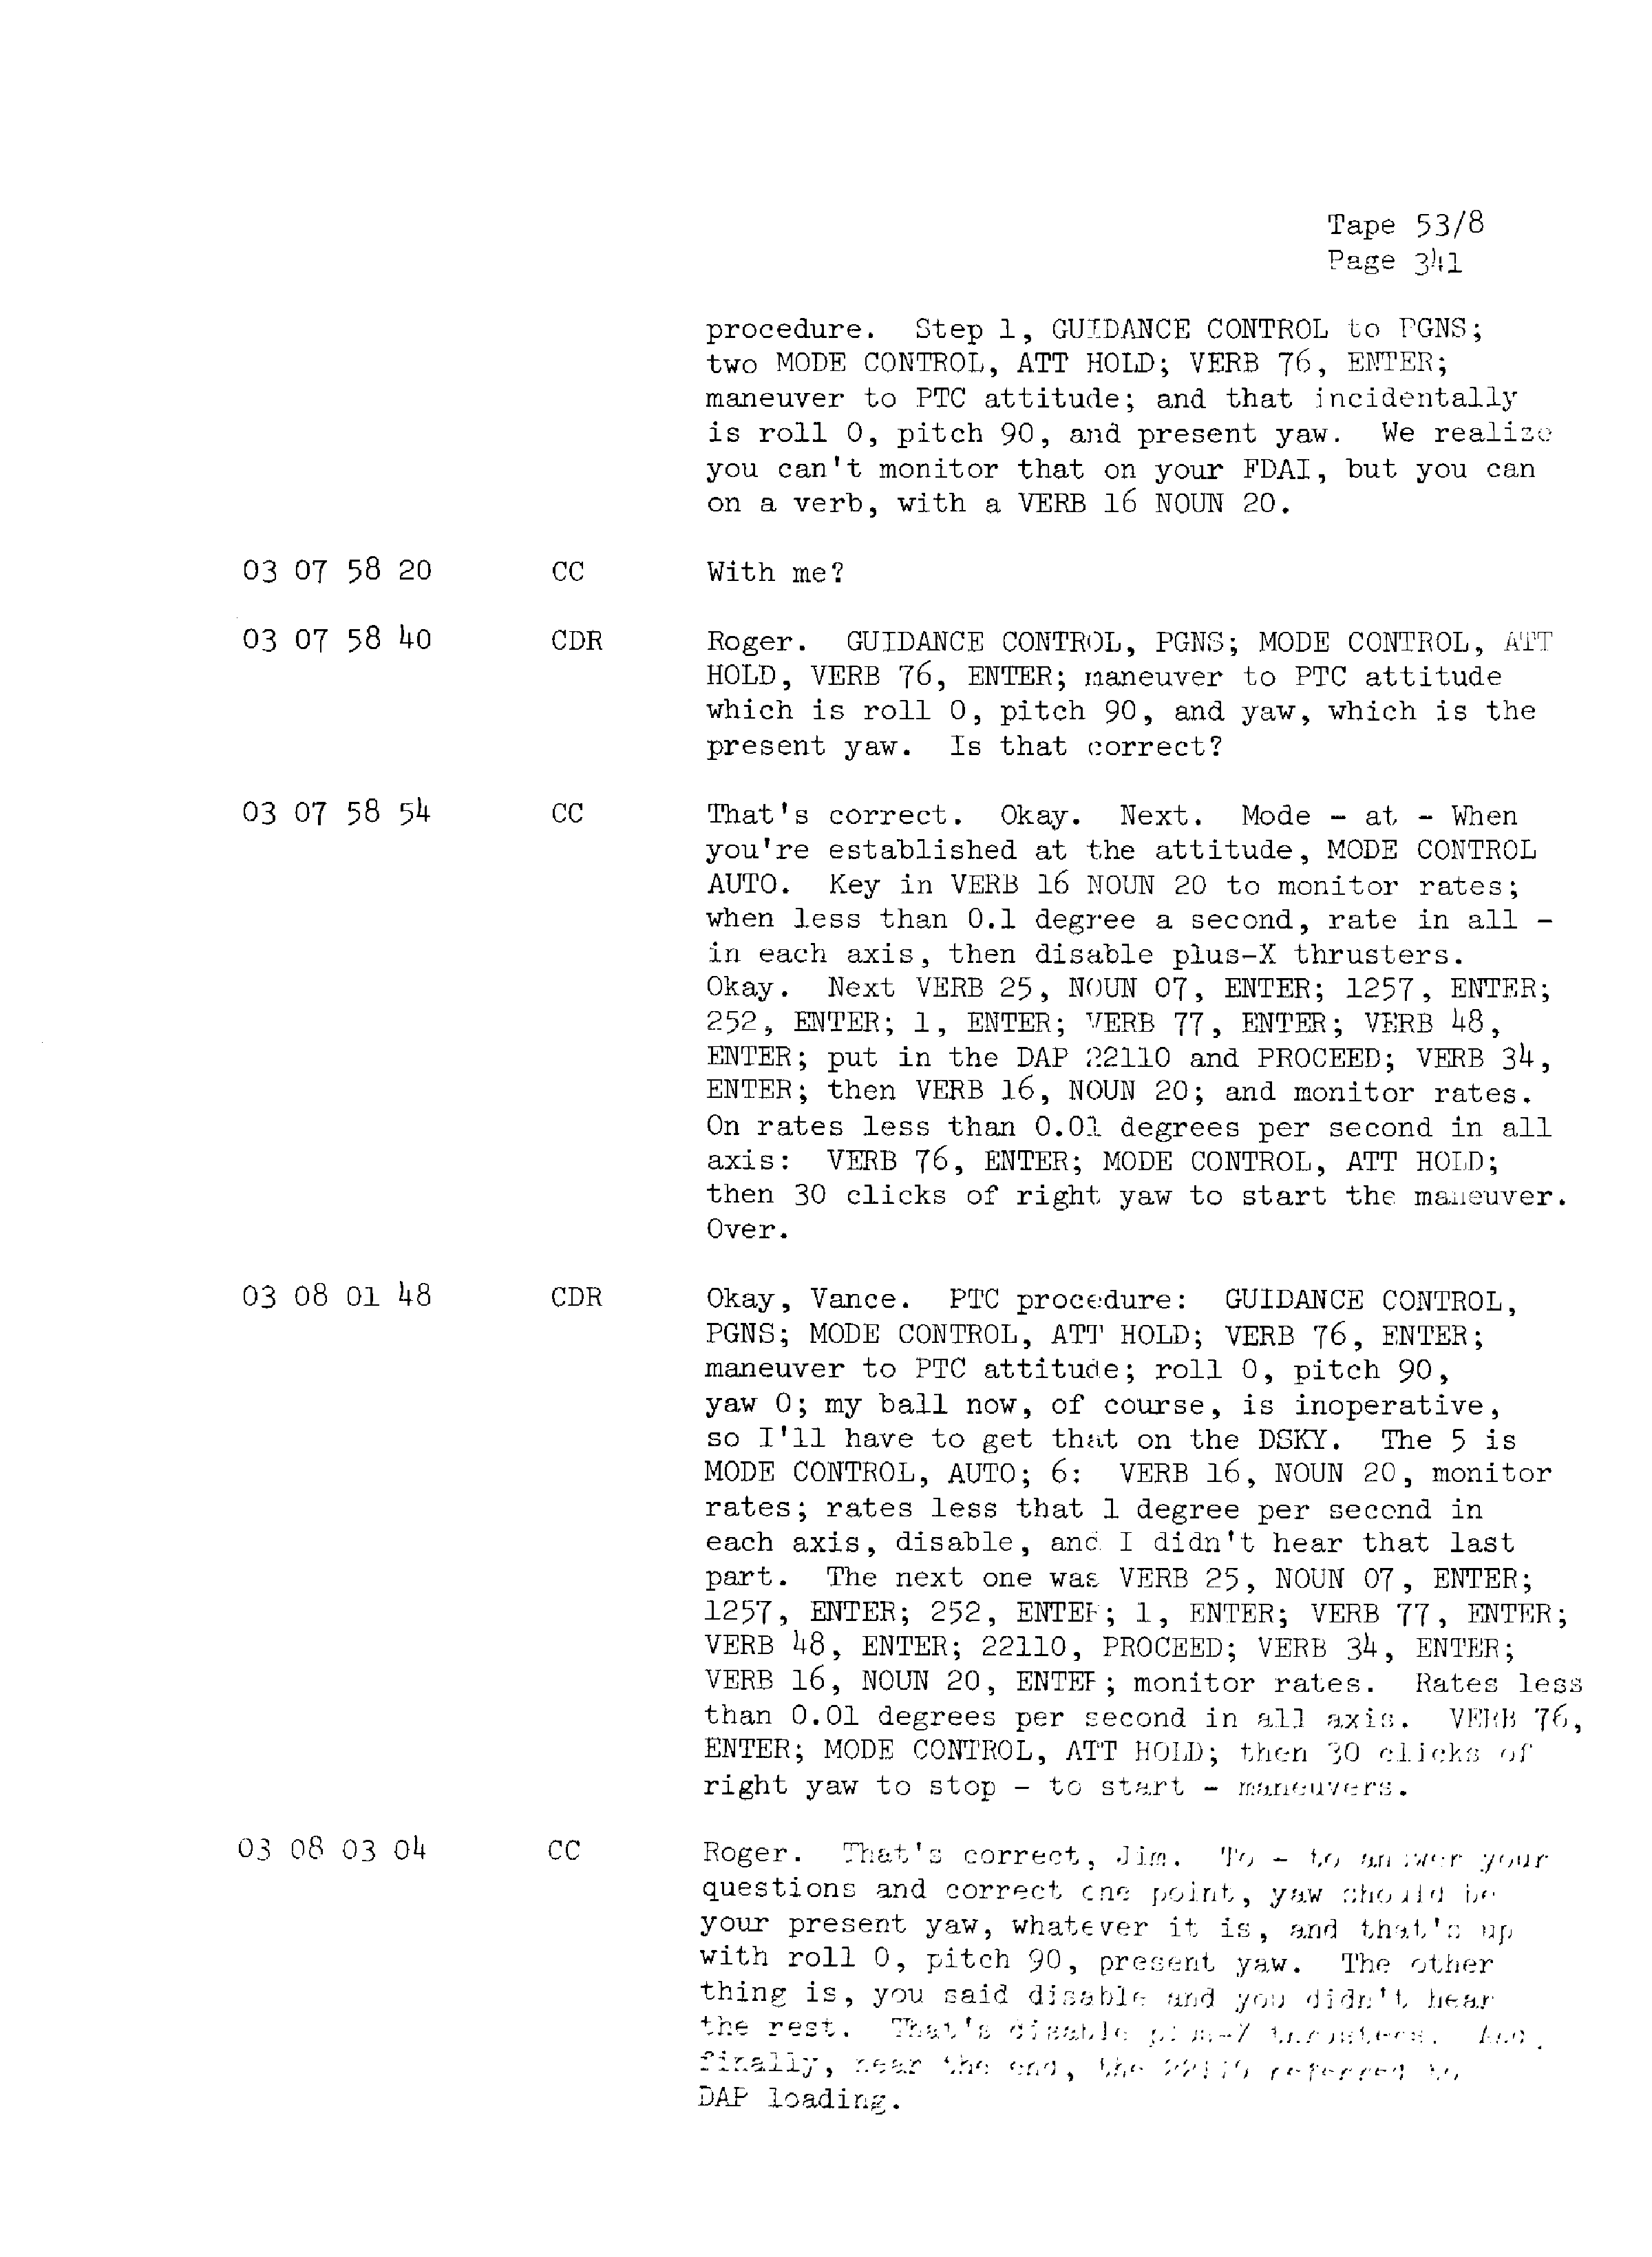 Page 348 of Apollo 13’s original transcript